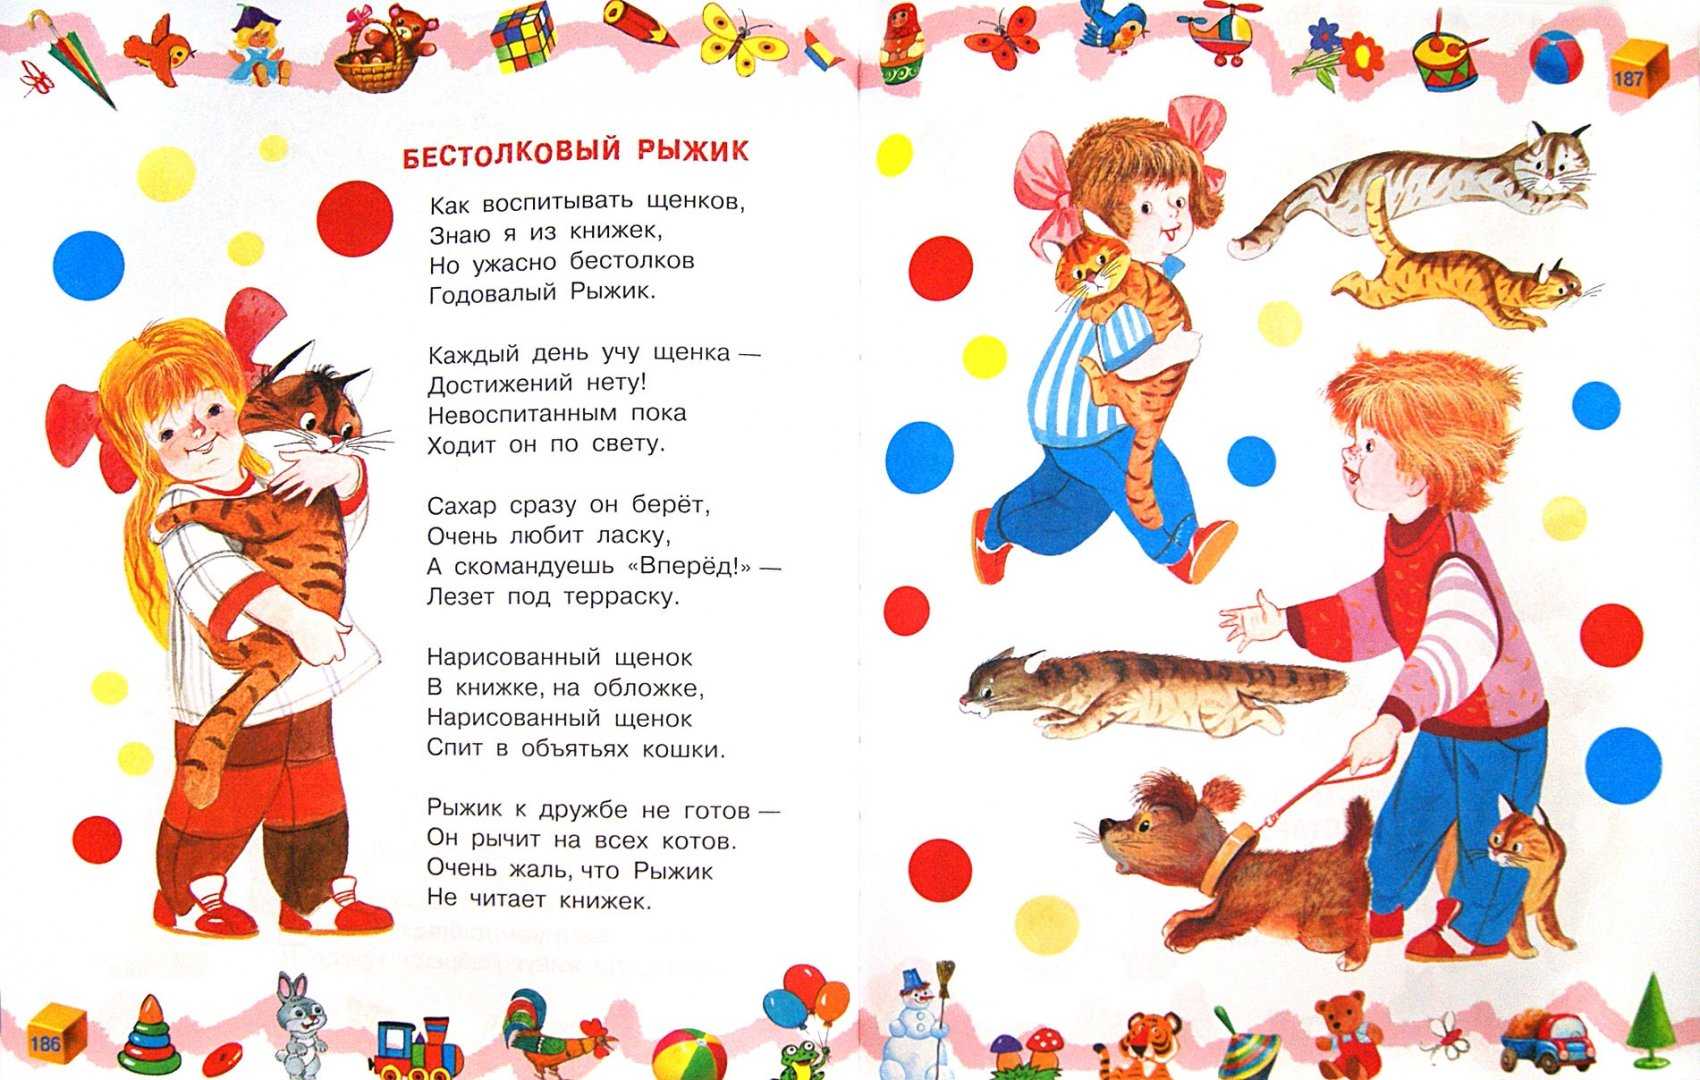 Агния барто - стихи для детей: читать детские стихотворения для школьников, малышей - список стихов на рустих